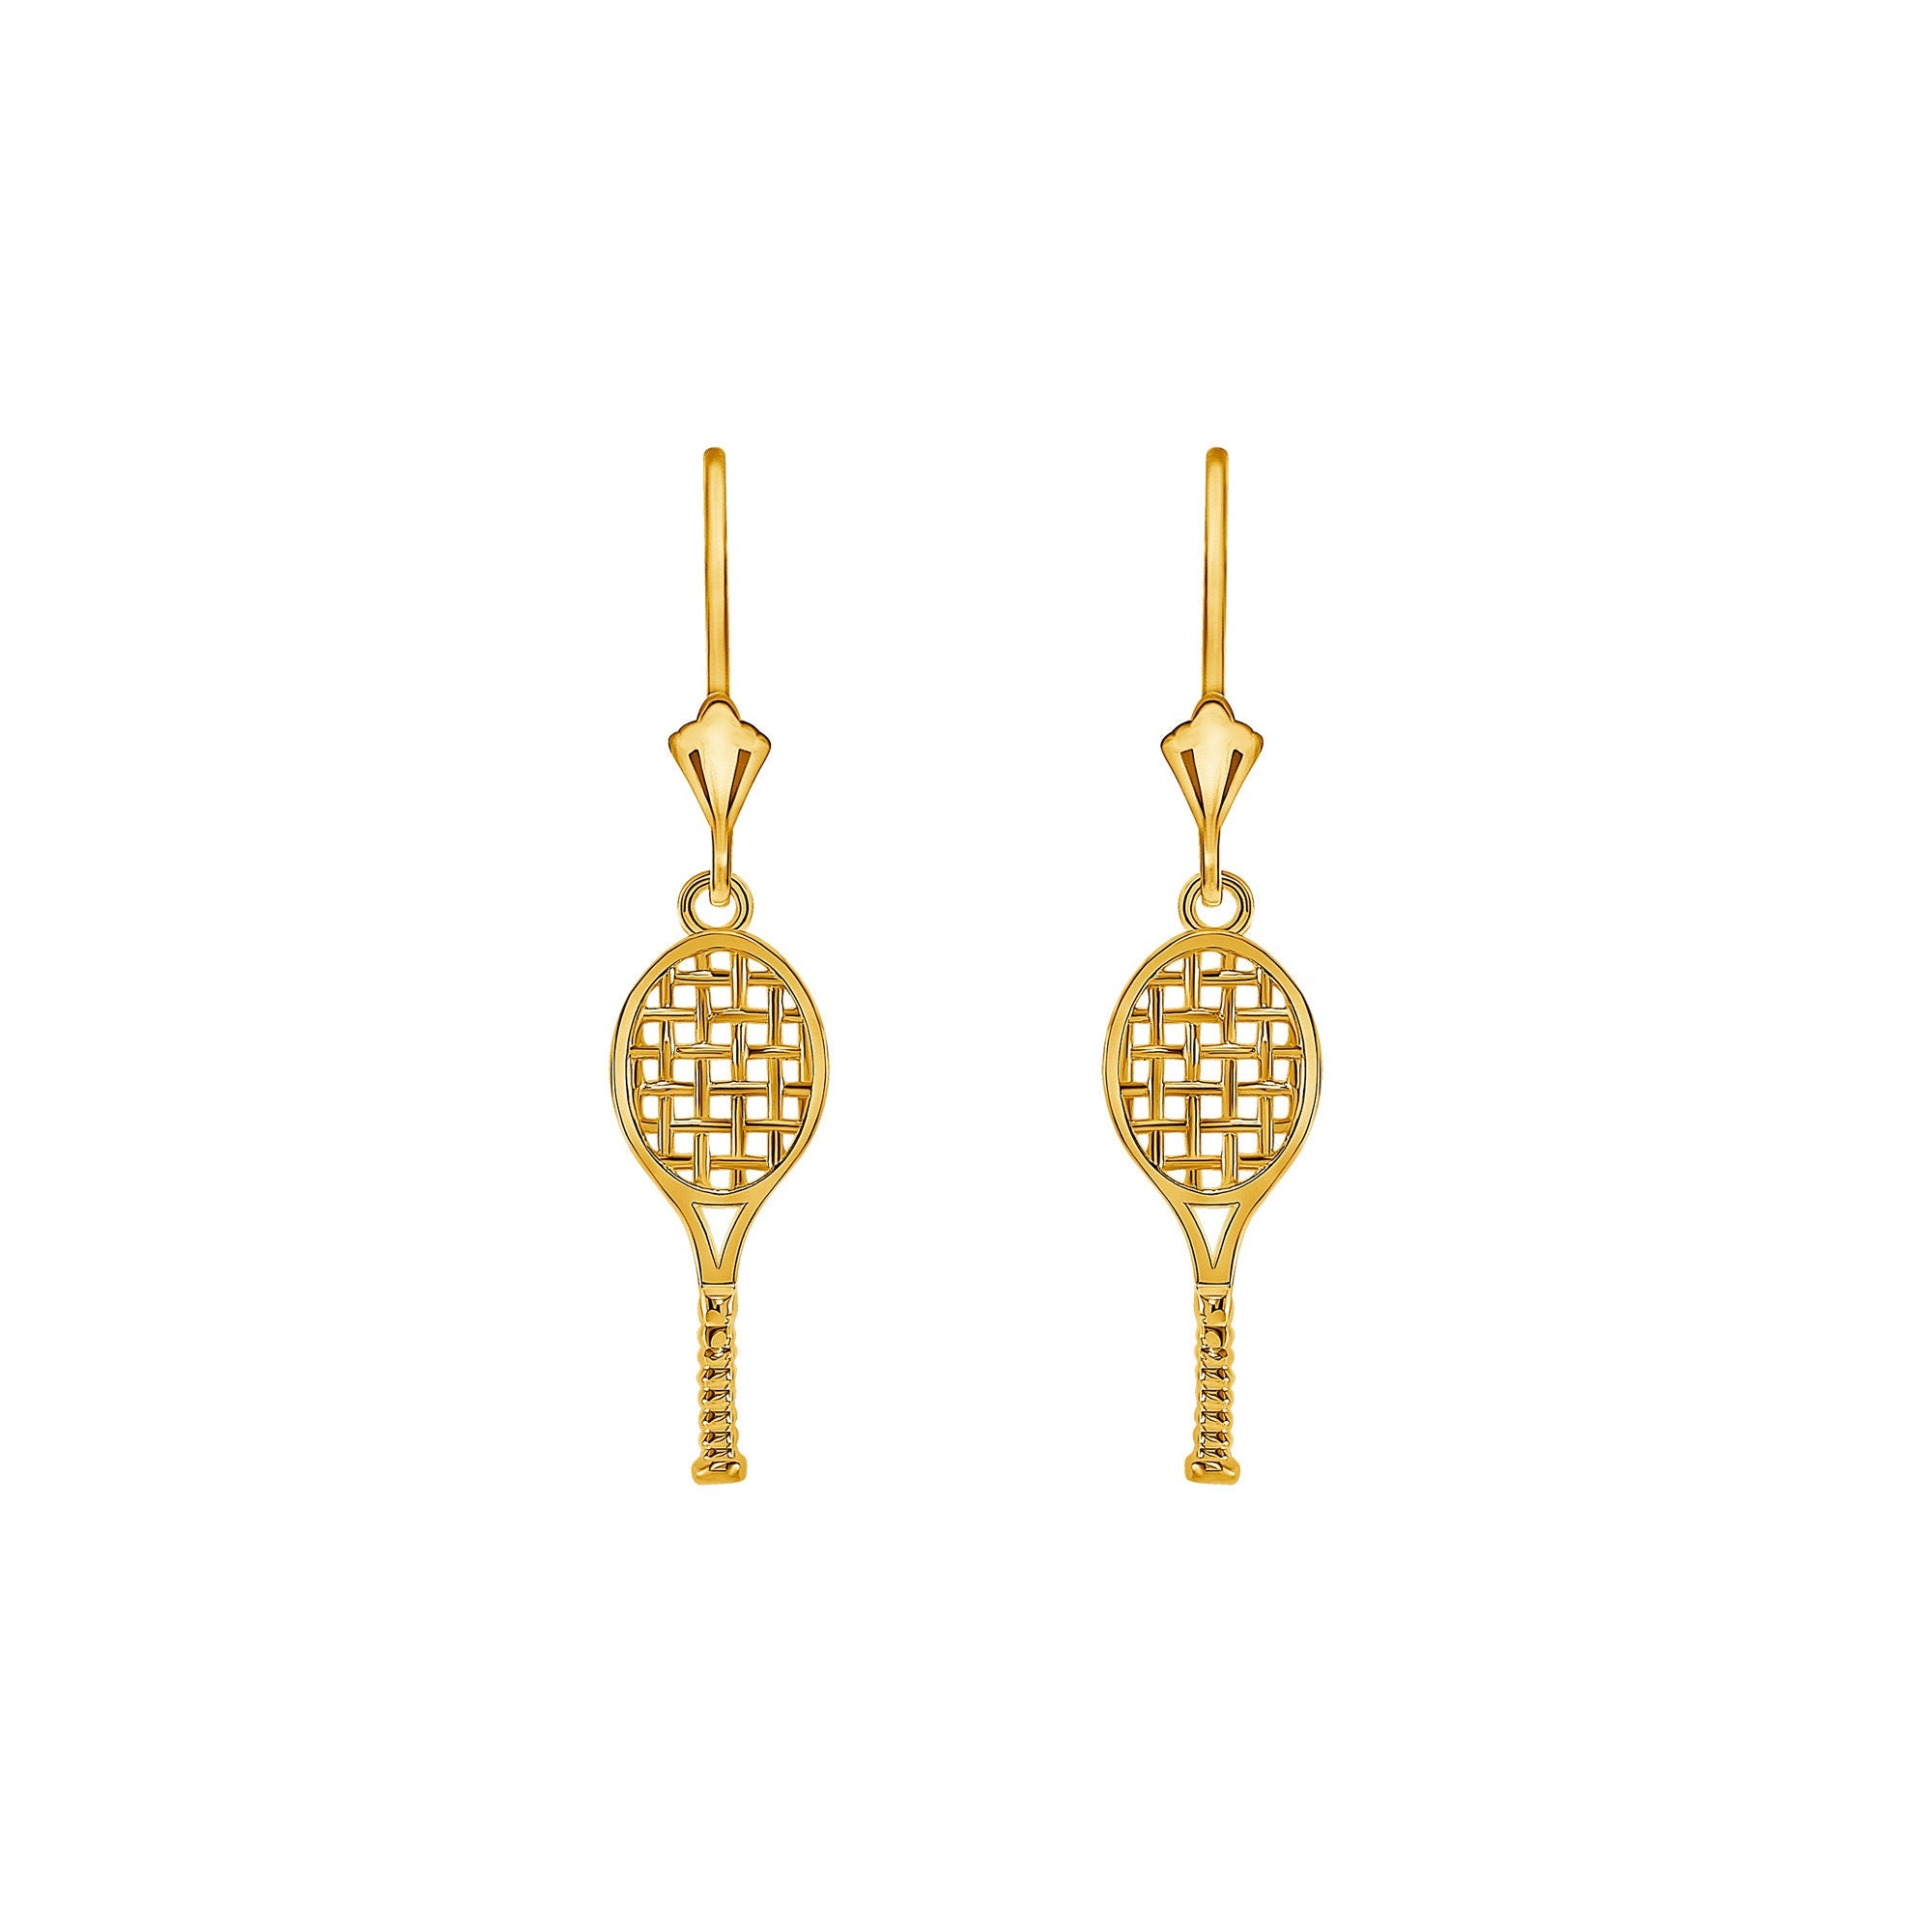 14k solid gold Tennis Racket earrings on fleur de lis Leverbacks